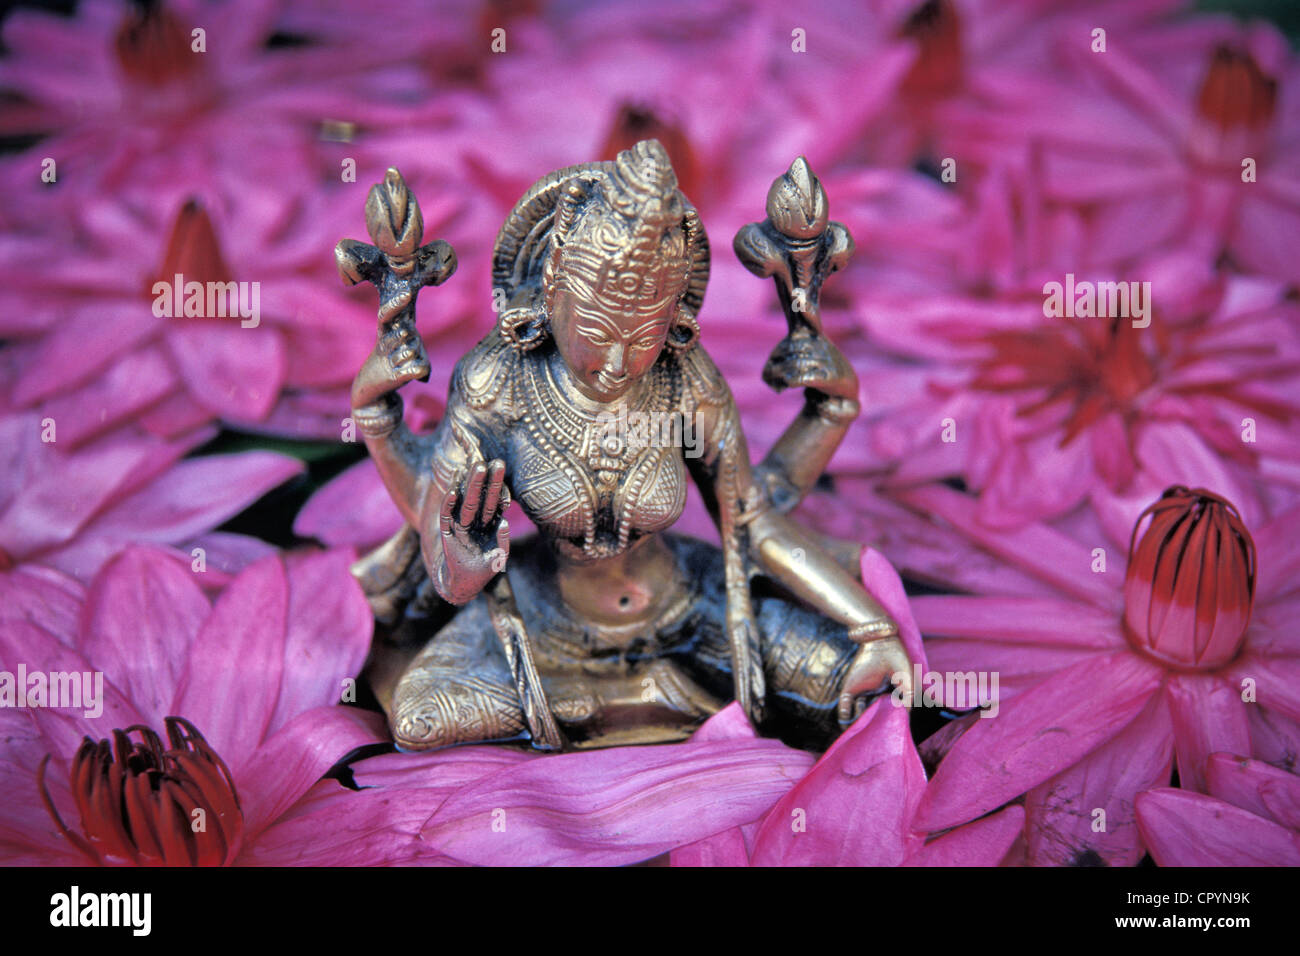 Göttin Lakshmi, die hinduistische Göttin von Glück und Schönheit, Lotusblüten, Thrissur, Kerala, Südindien, Asien Stockfoto